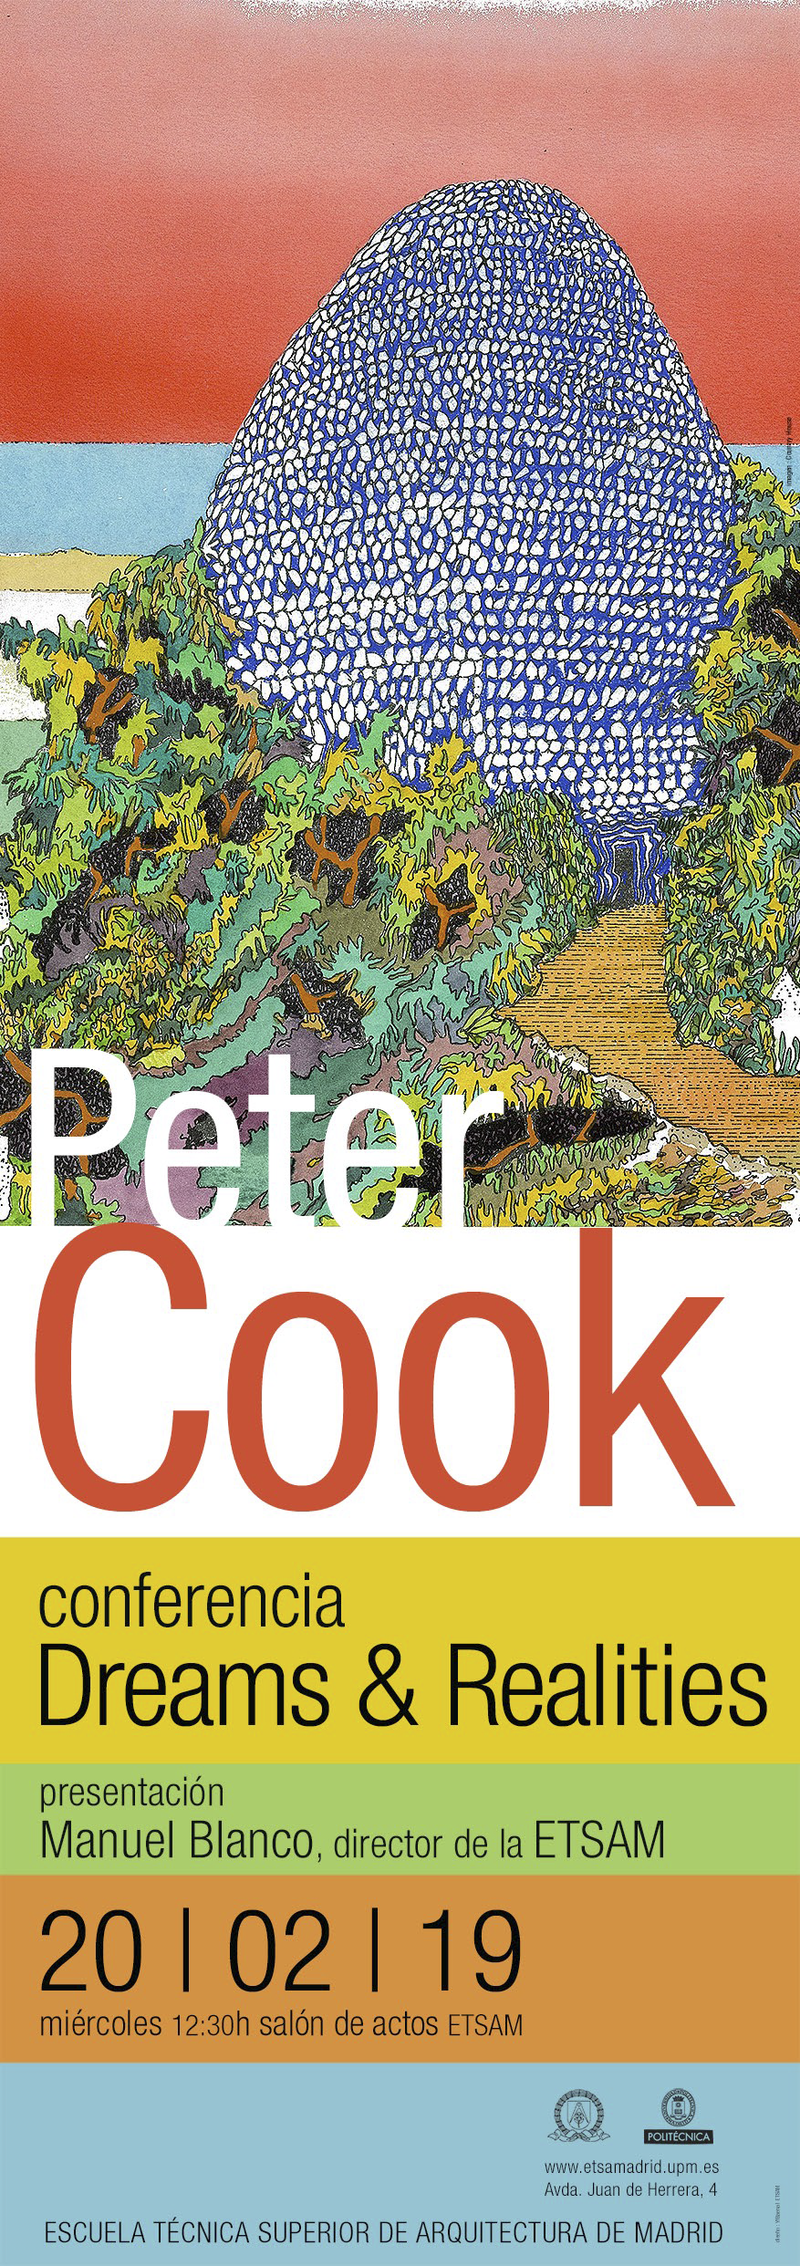 Dreams & Realities, Peter Cook